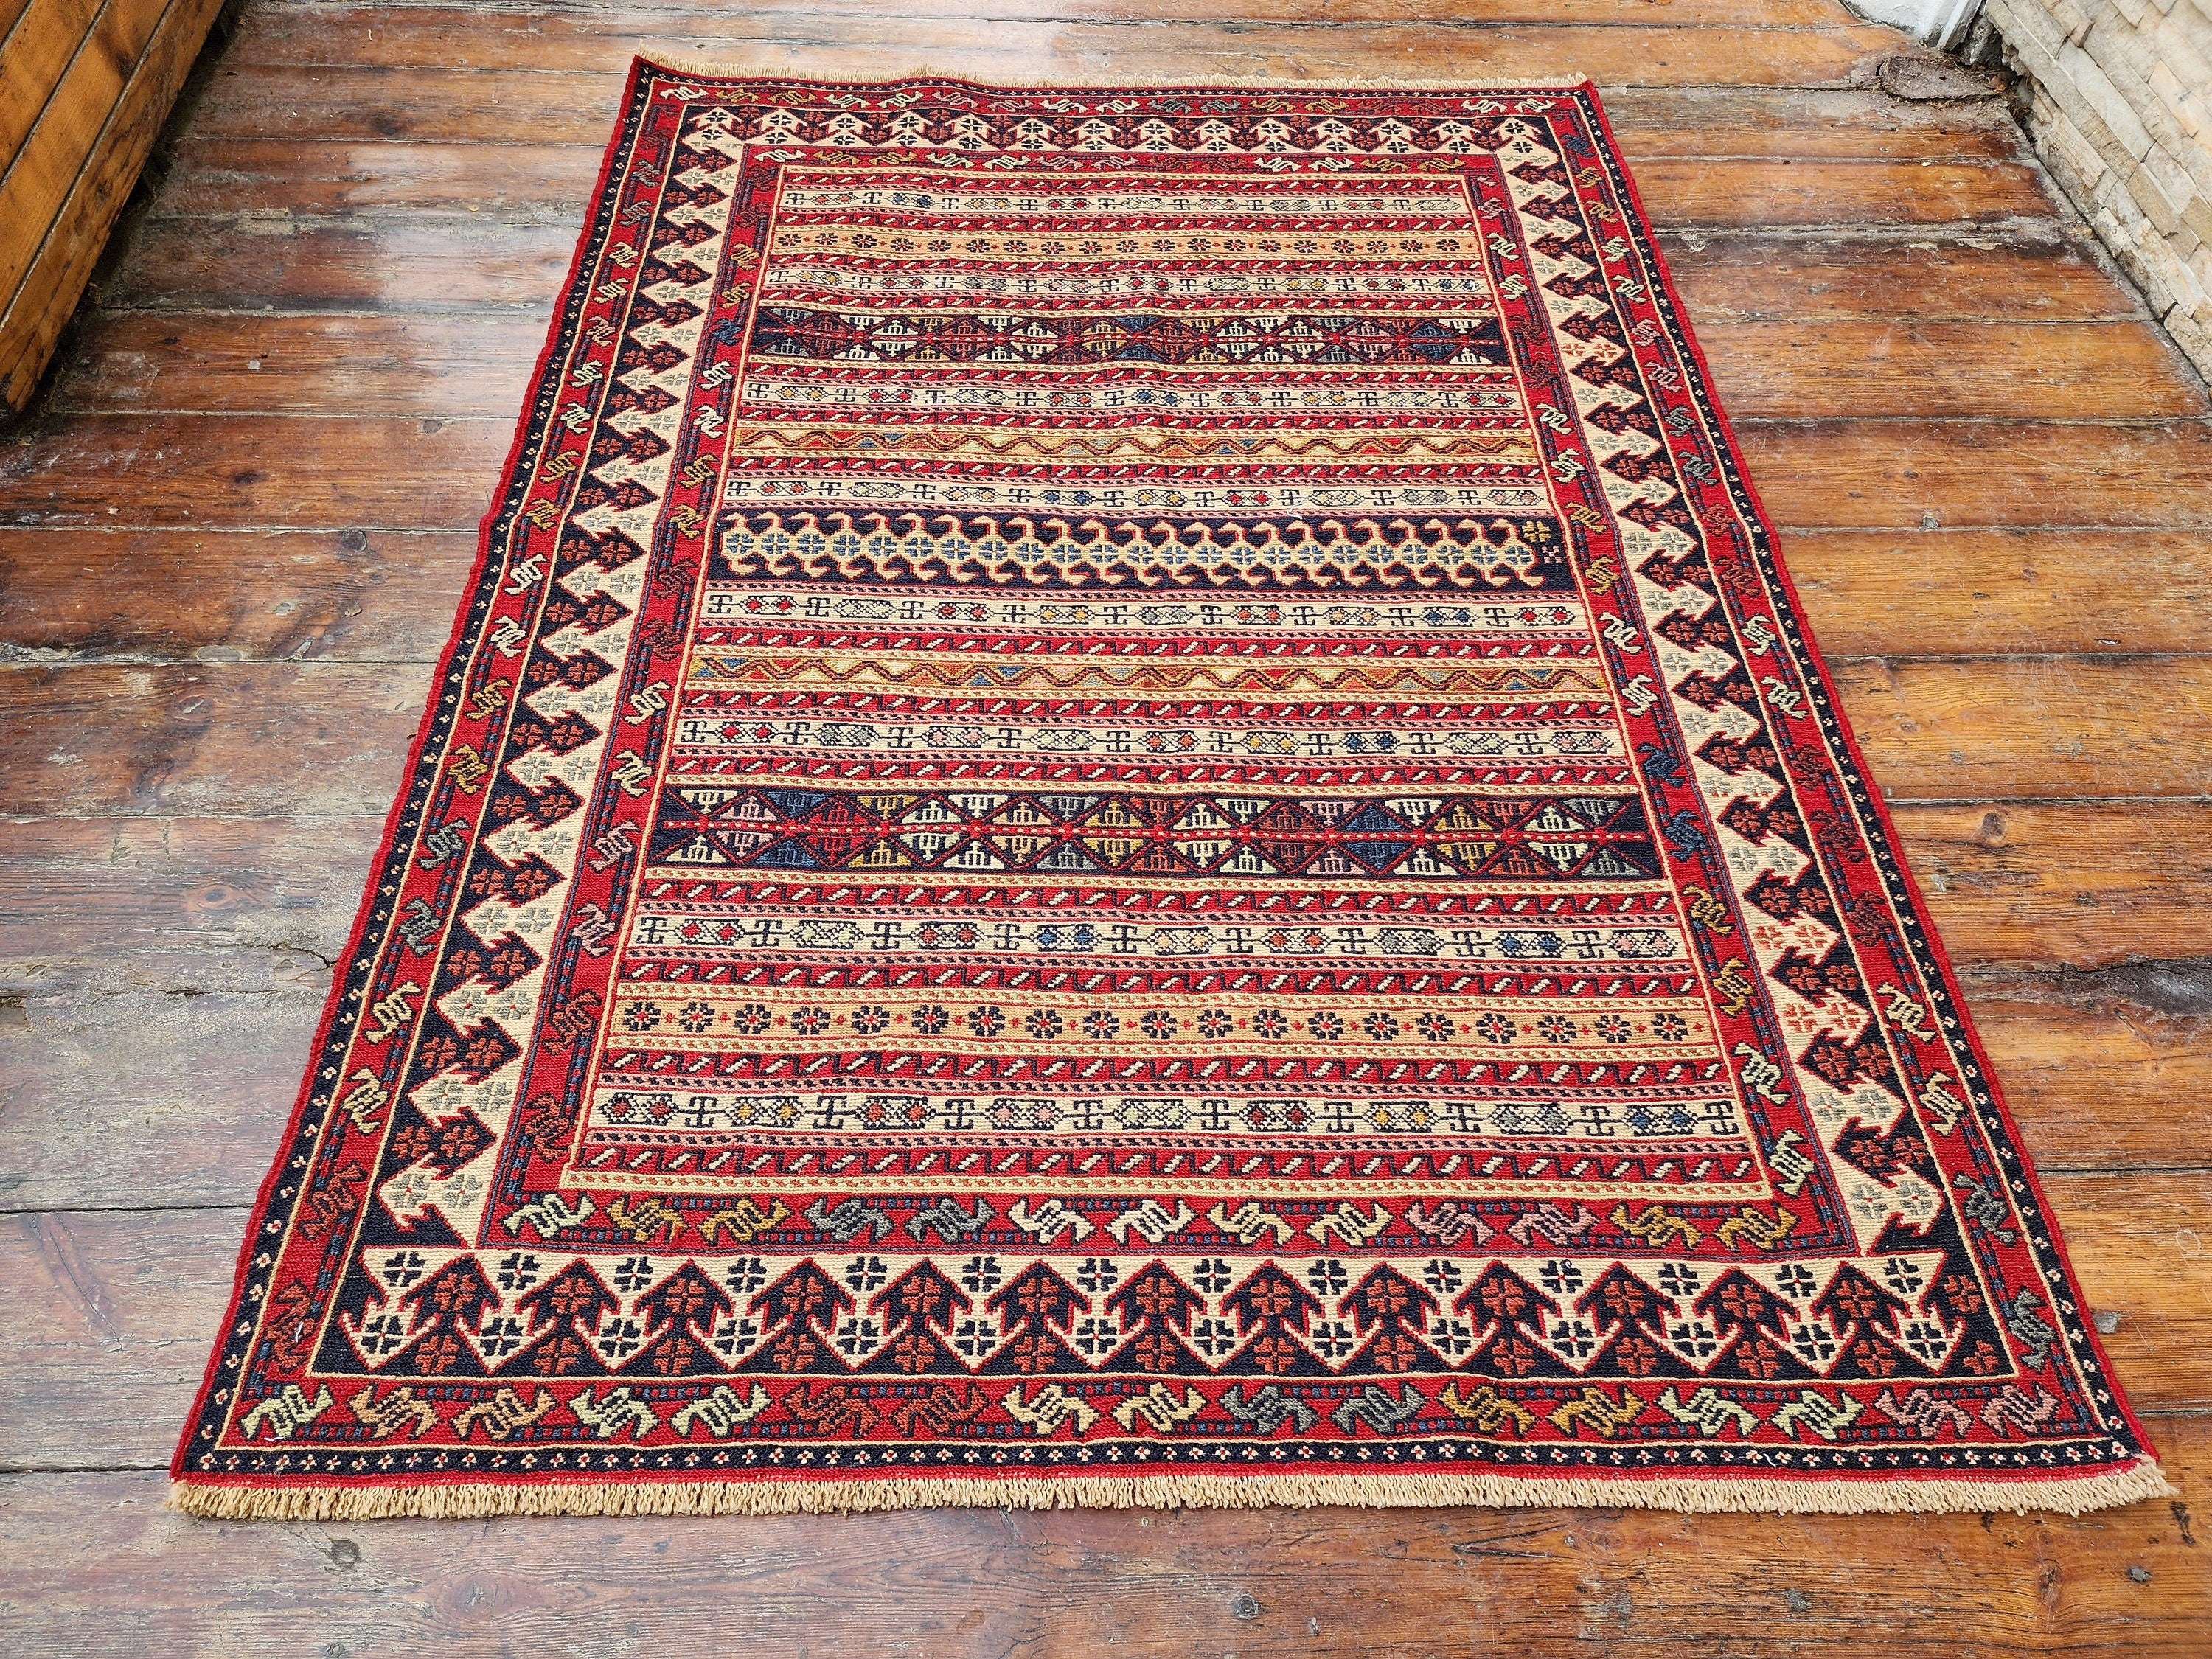 Persian Rah Rah Soumak 5 x 3 ft Red Brown and Blue Colorful Handmade Kurdish Kilim, Natural Wool Boho Rustic Floor Rug, Turkish Oriental Rug